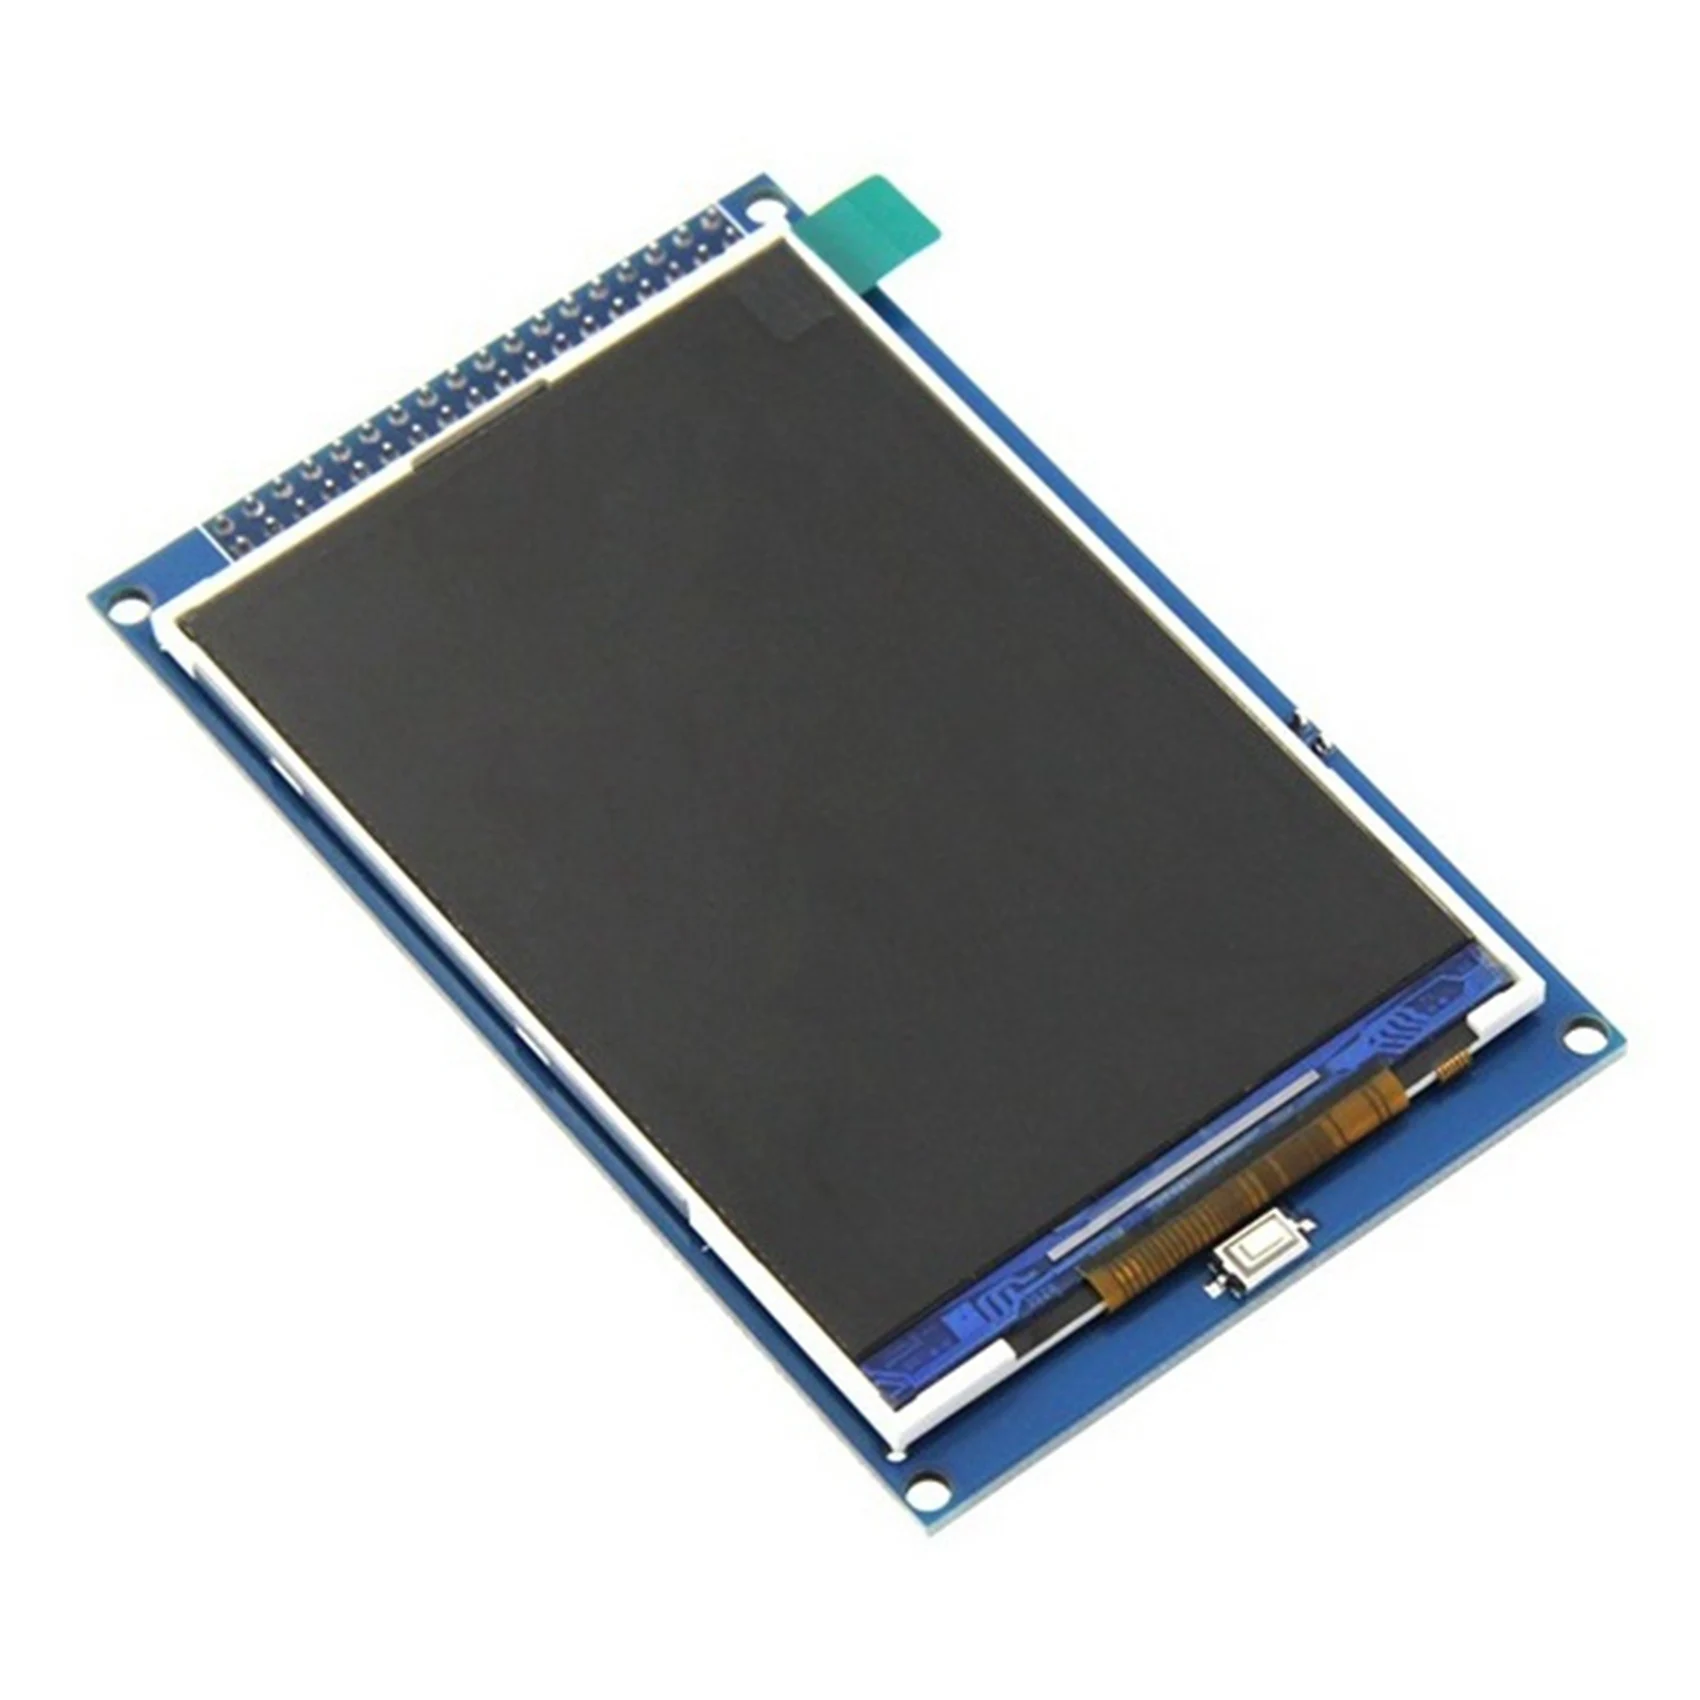 

Цветной ЖК-экран TFT 3,5 дюйма, модуль X, ЖК-экран Ultra HD, TFT-дисплей для платы Arduino Mega2560 R3